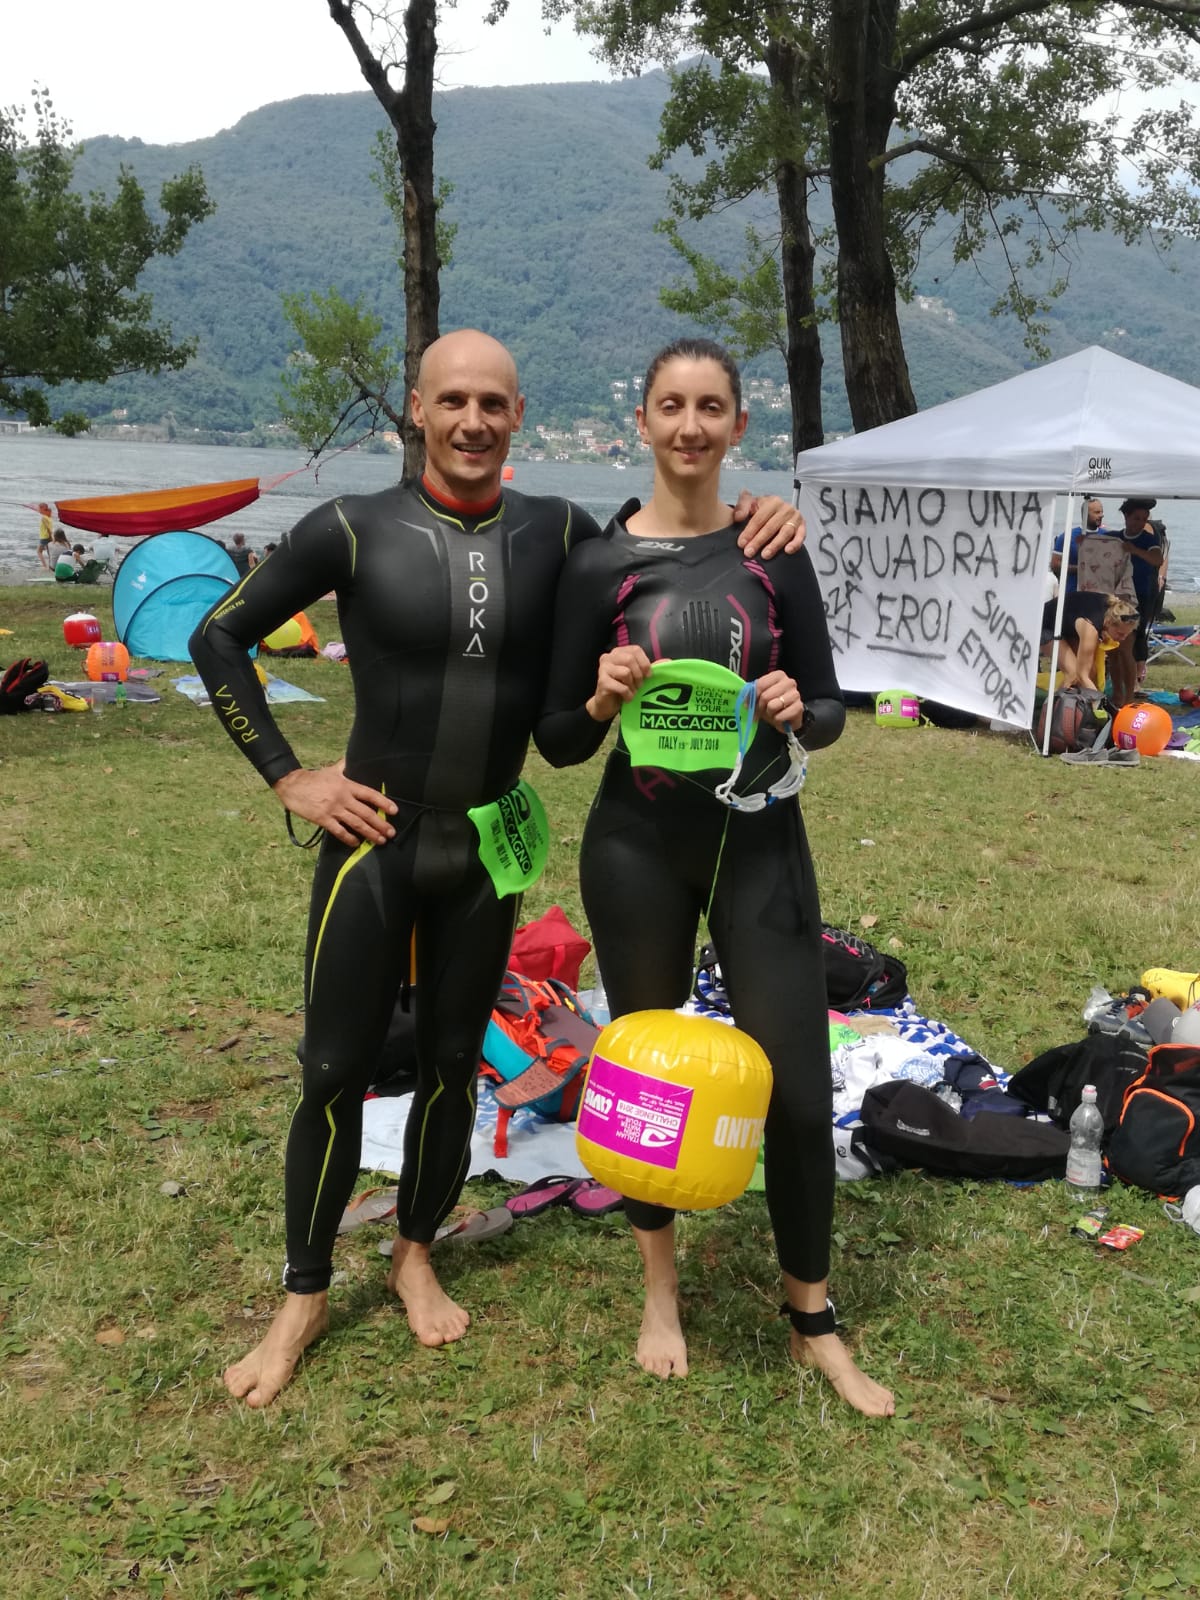 Italian Open Water Tour, a Maccagno vince Fabio Riganti